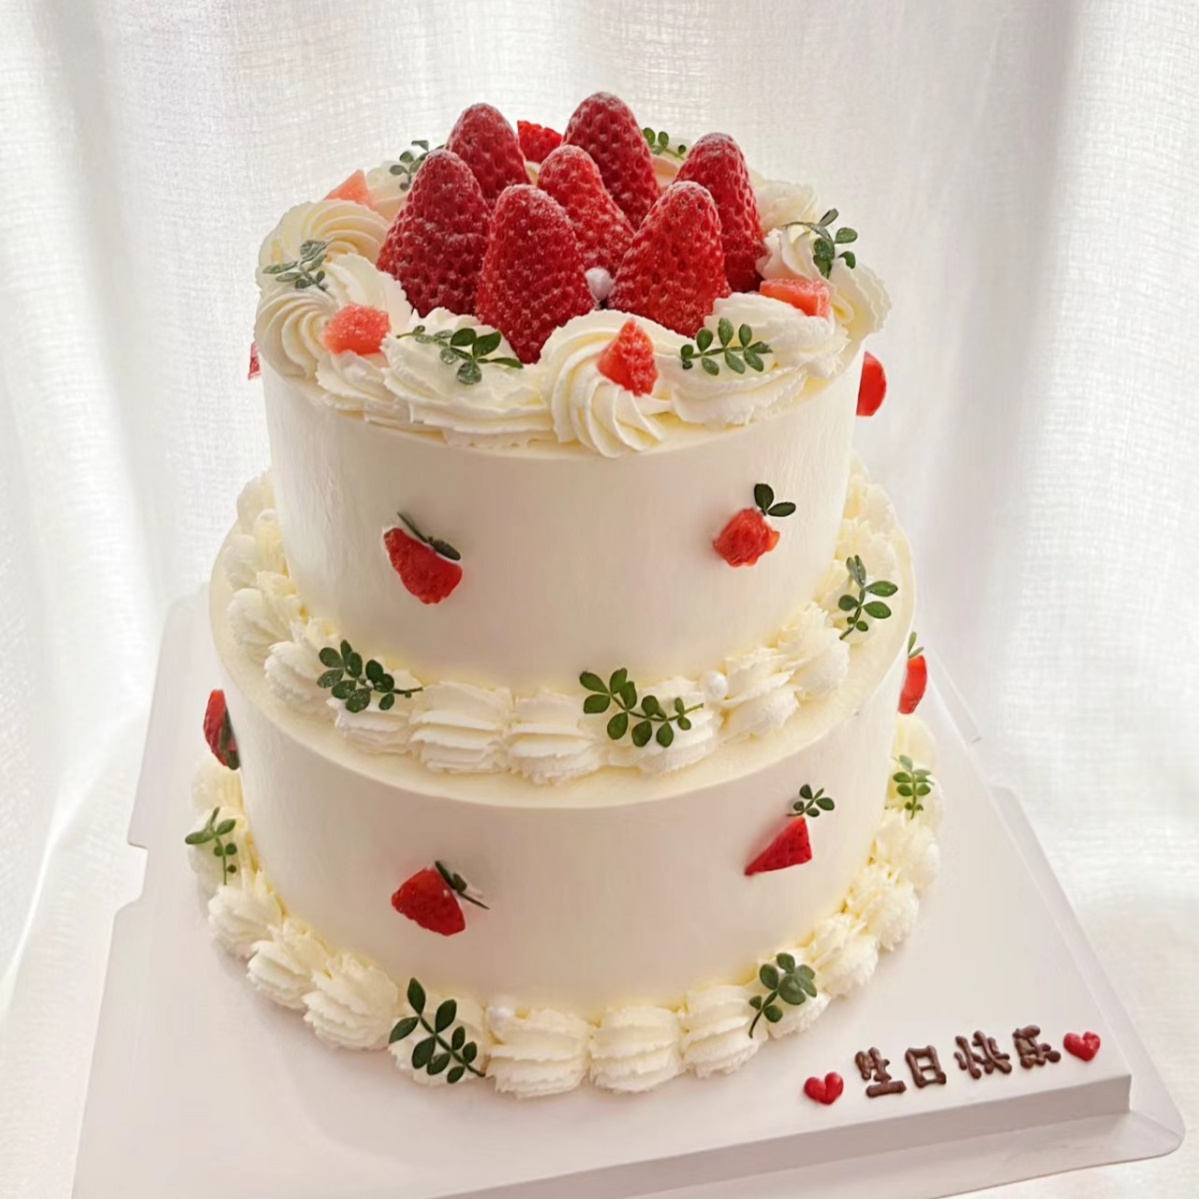 米帝欧创意双层草莓芒果多层鲜水果动物奶油生日蛋糕北京同城配送